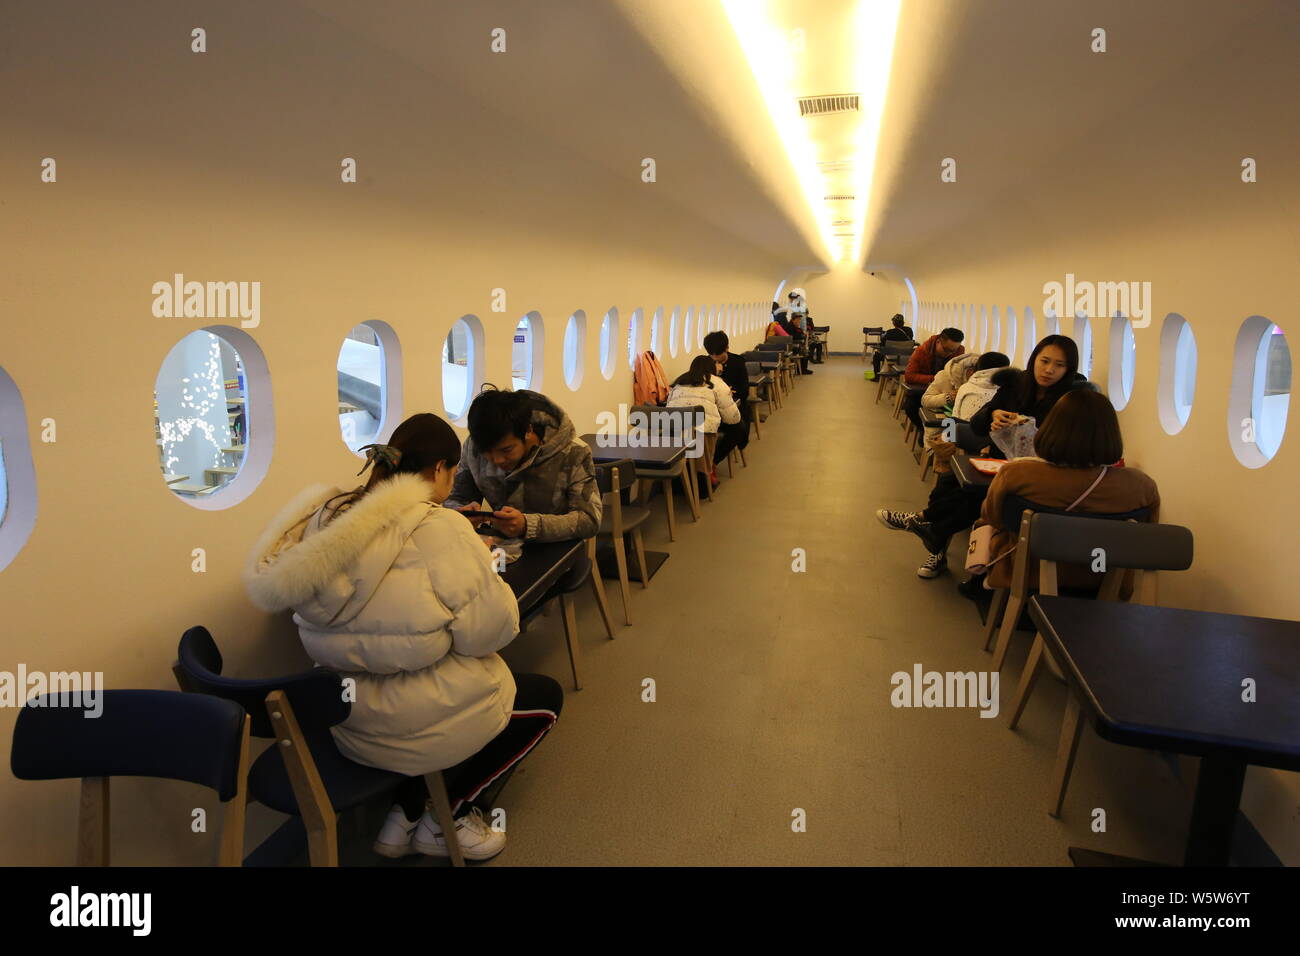 Gli studenti cenare presso un'aviazione mensa a tema decorate con un full-size mock-up del C919 jet del passeggero a Zhengzhou università di aeronautica in Foto Stock